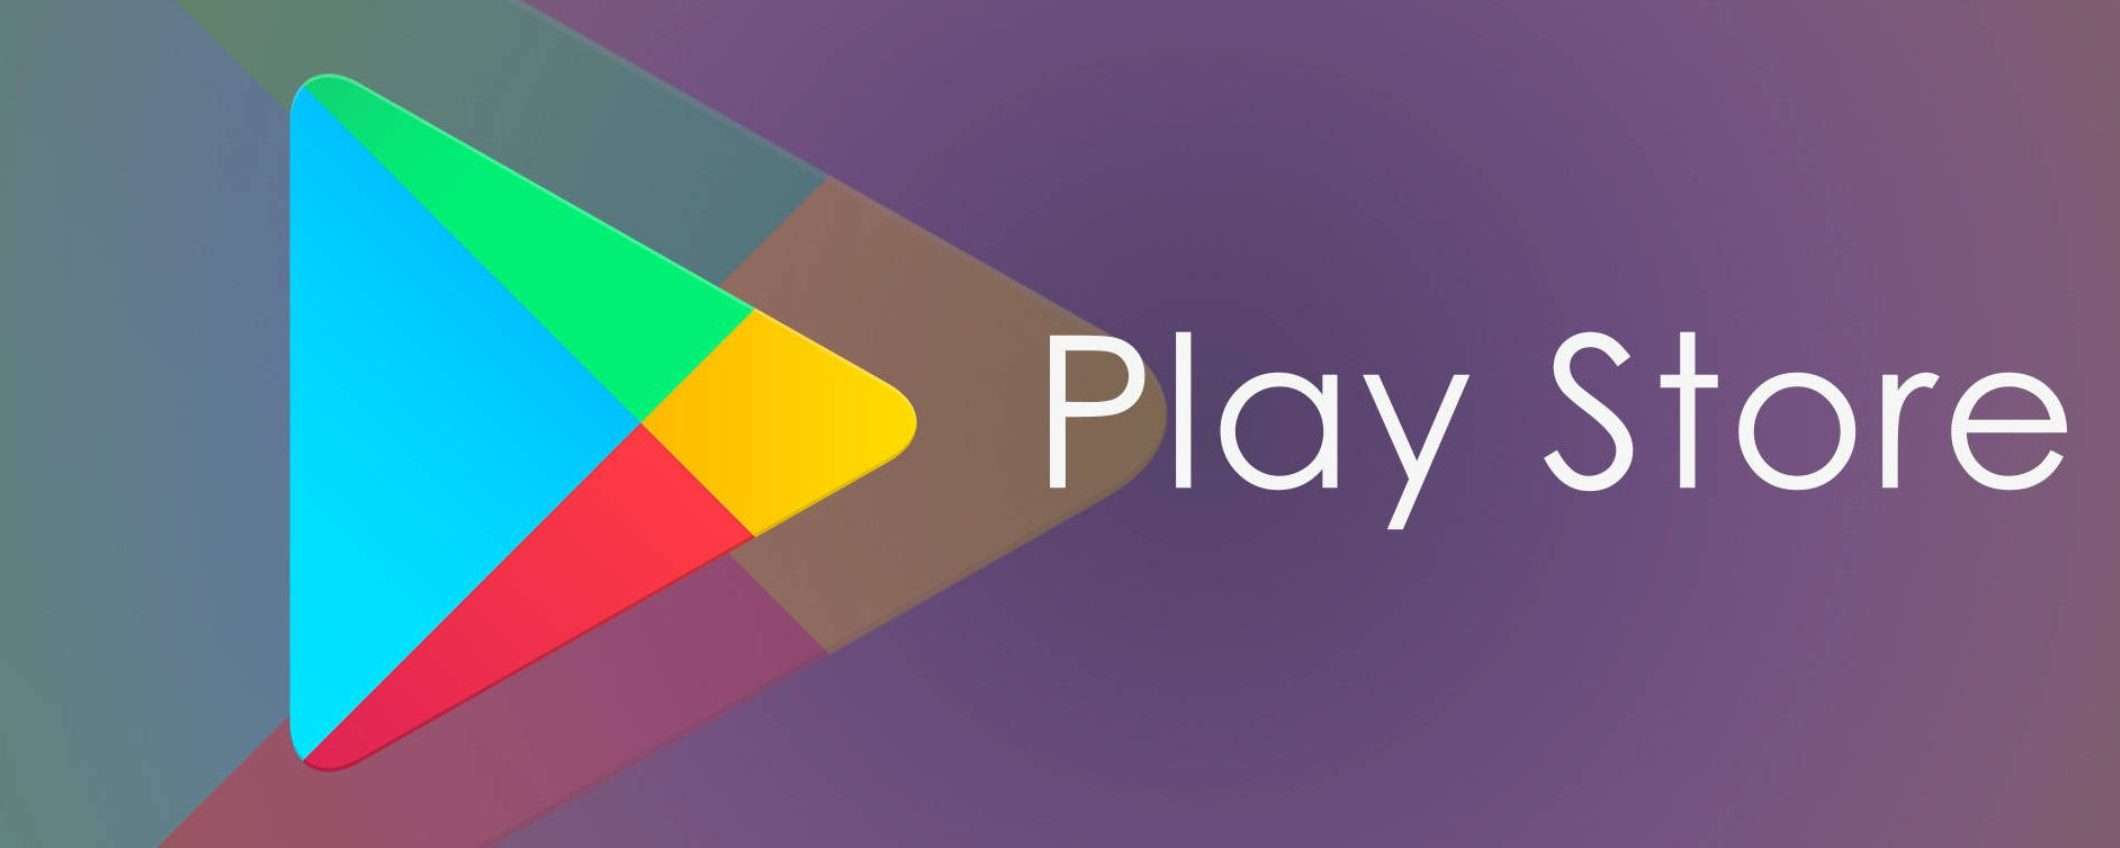 Google: fino a 137 milioni per modificare Play Store